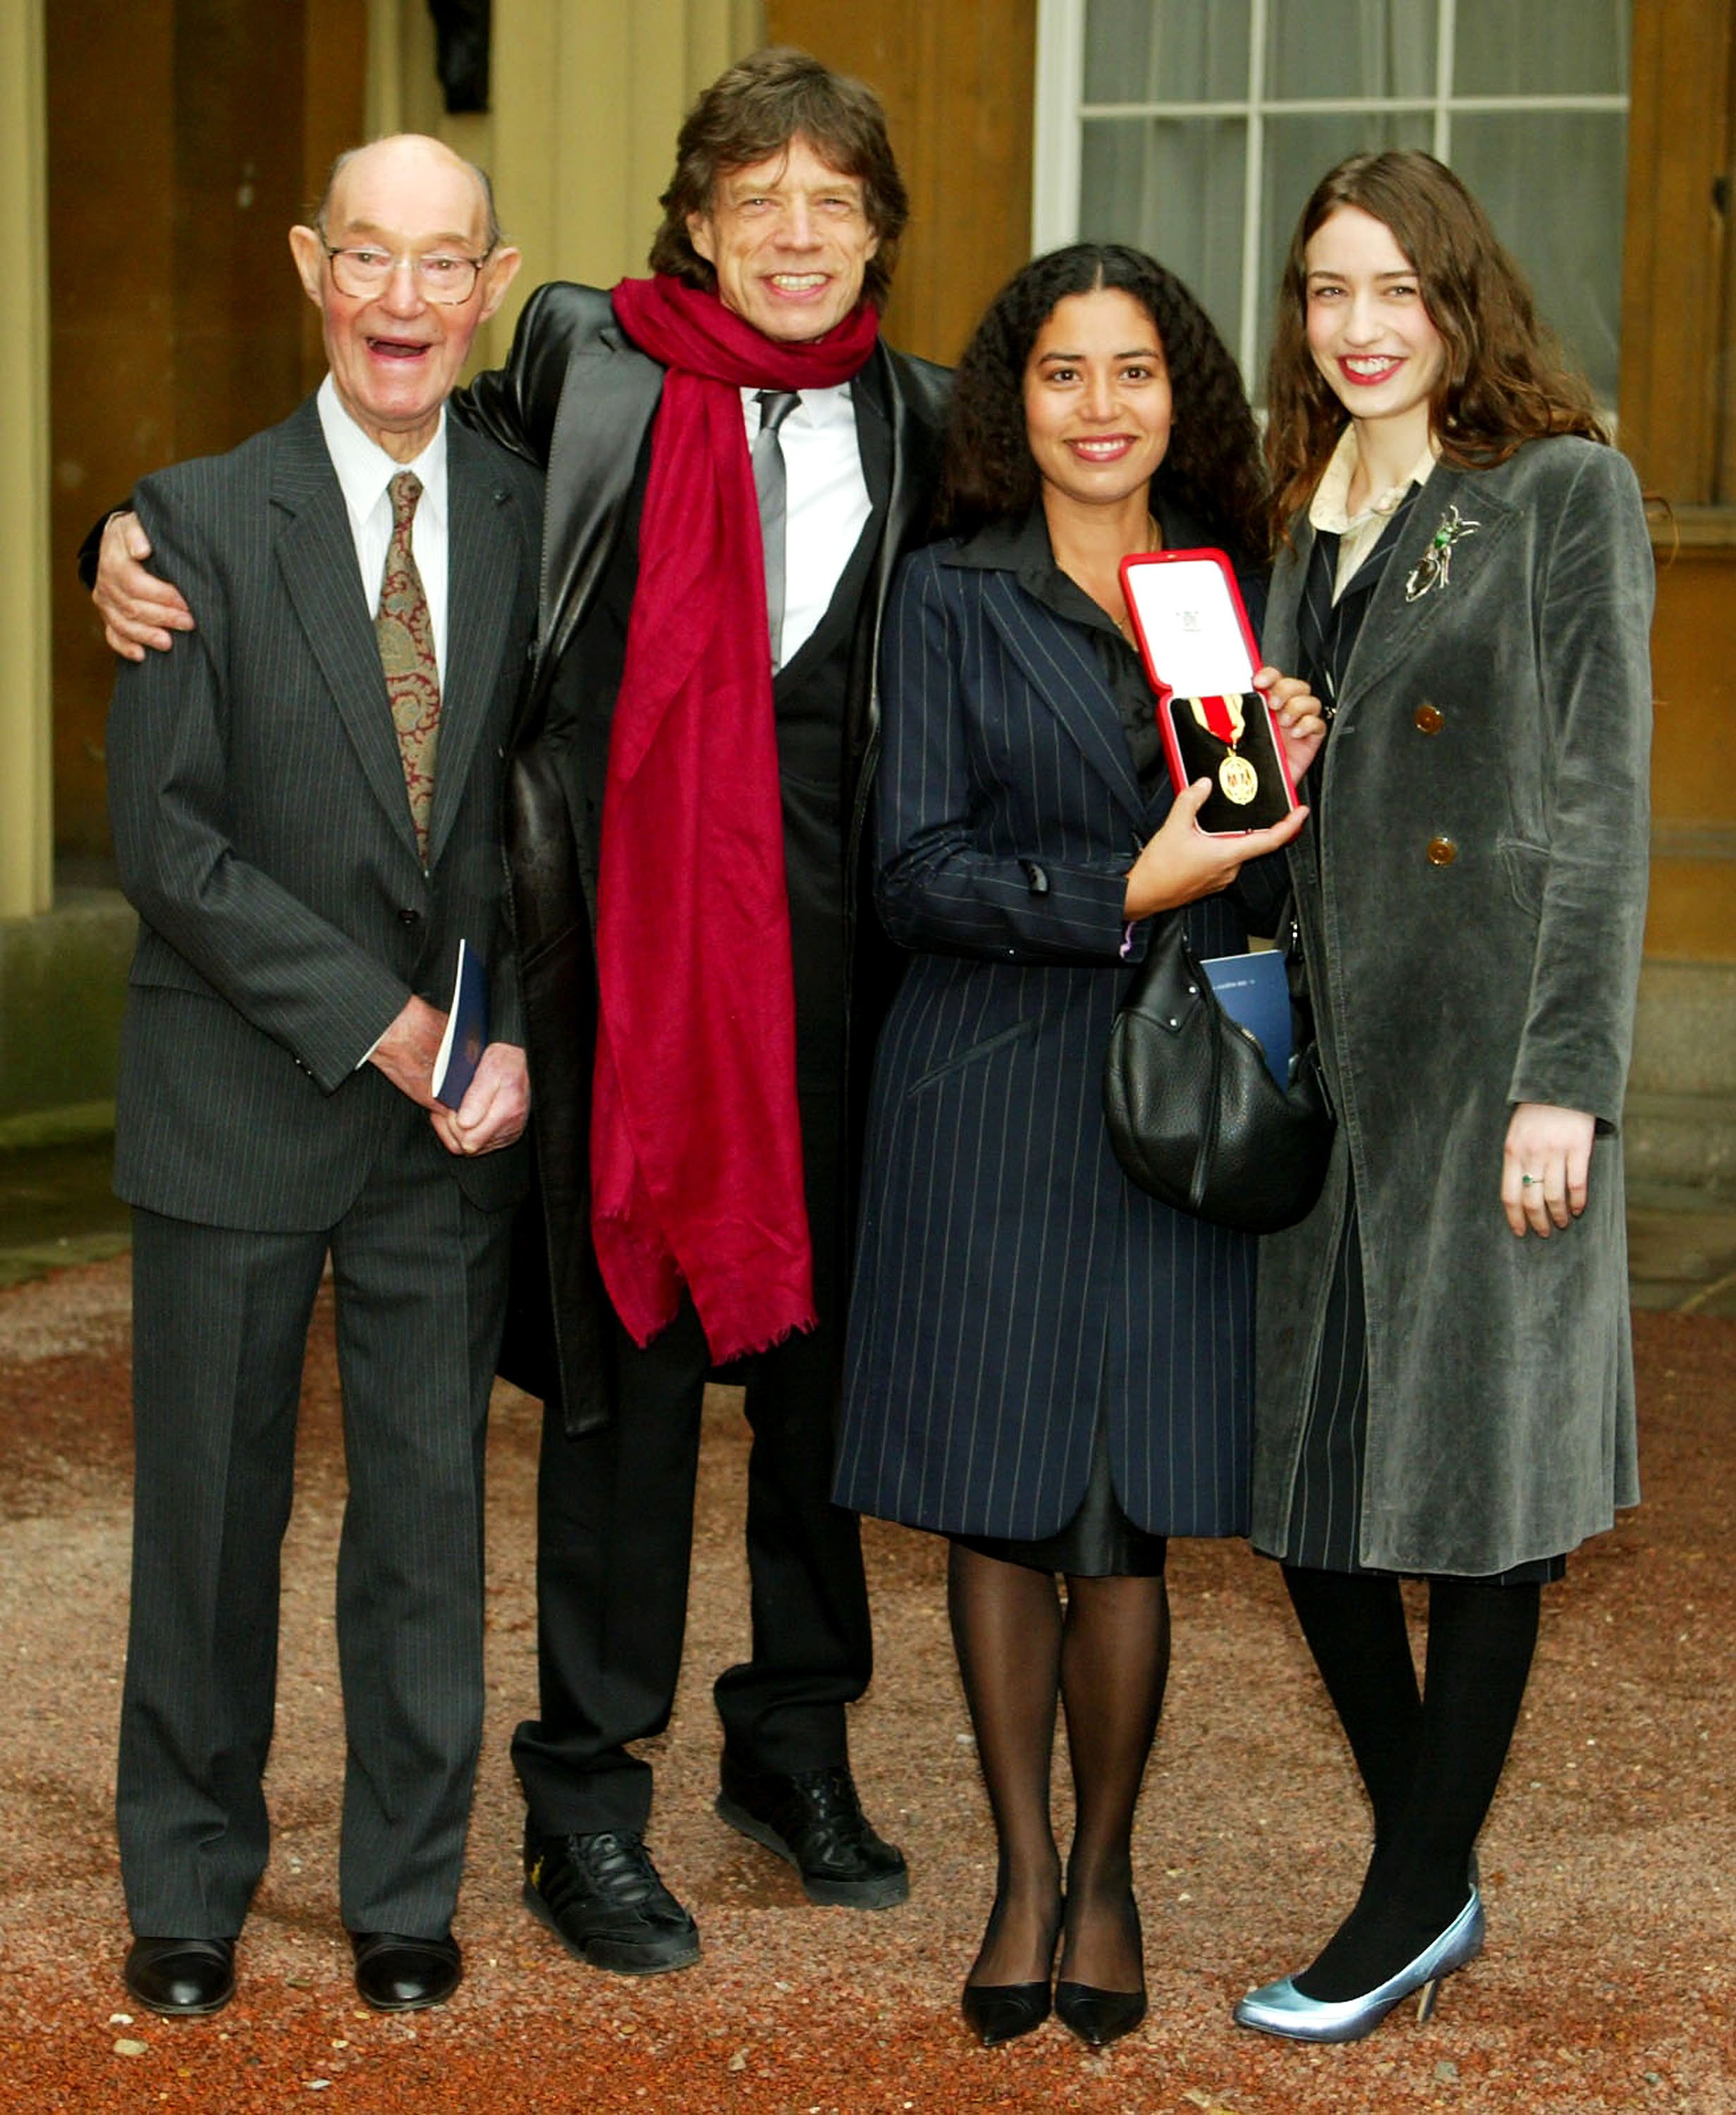 Le père Joe avec le rockeur vétéran Mick Jagger et ses filles Karis et Elizabeth au Buckingham Palace le 12 décembre 2003 à Londres. / Source : Getty Images